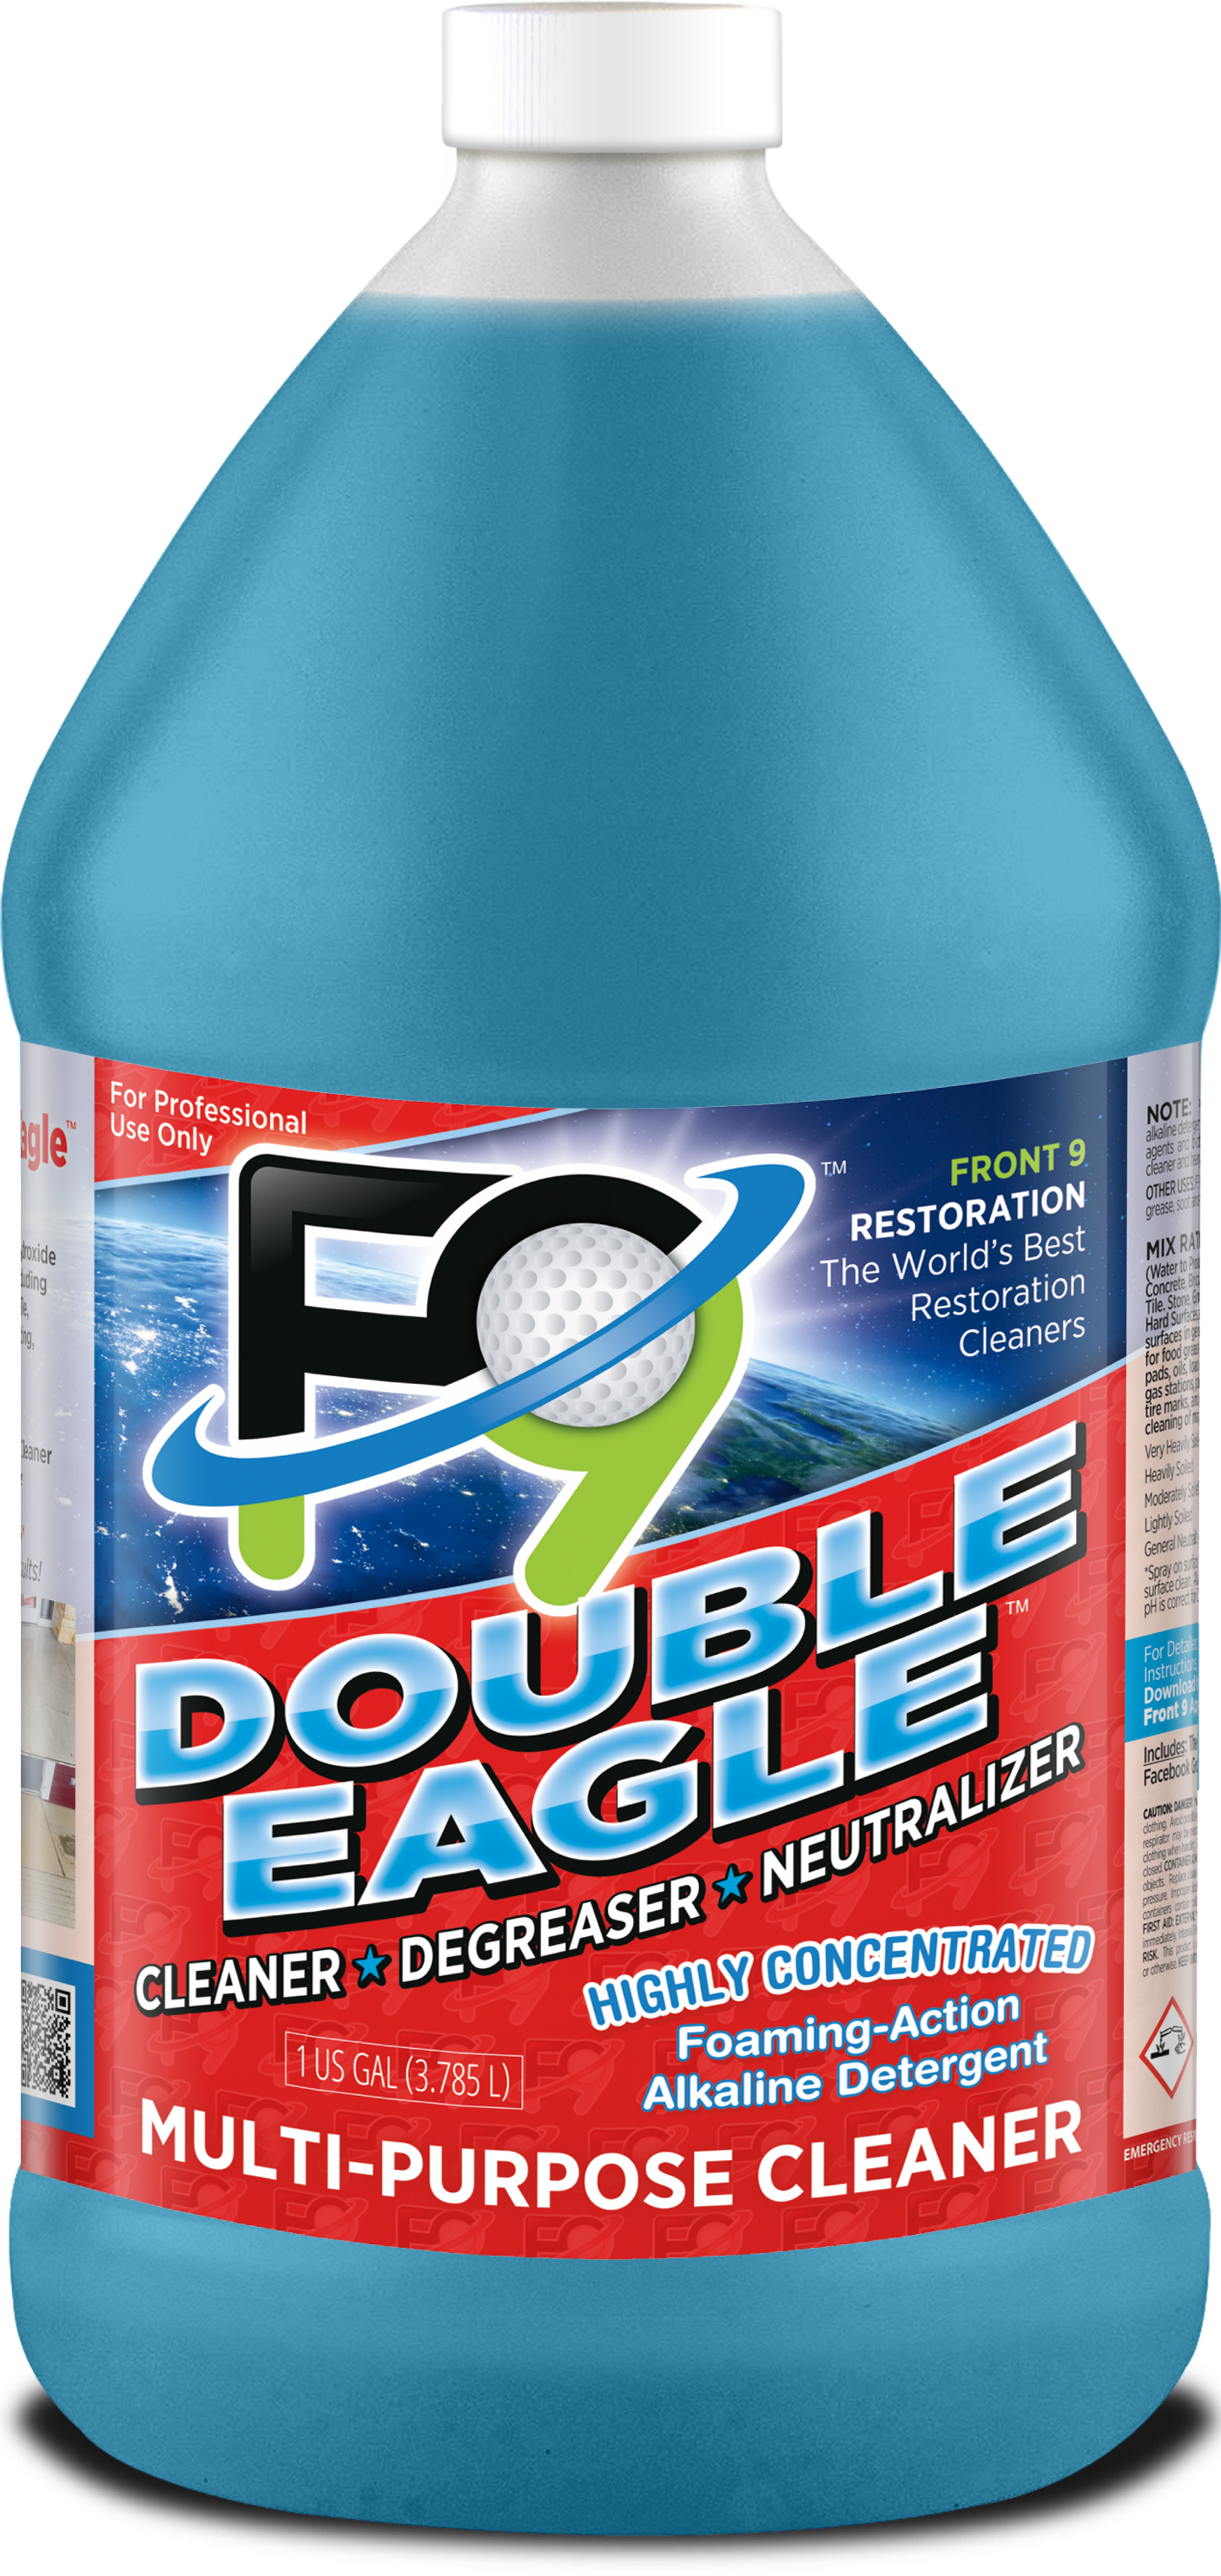 F9 Double Eagle